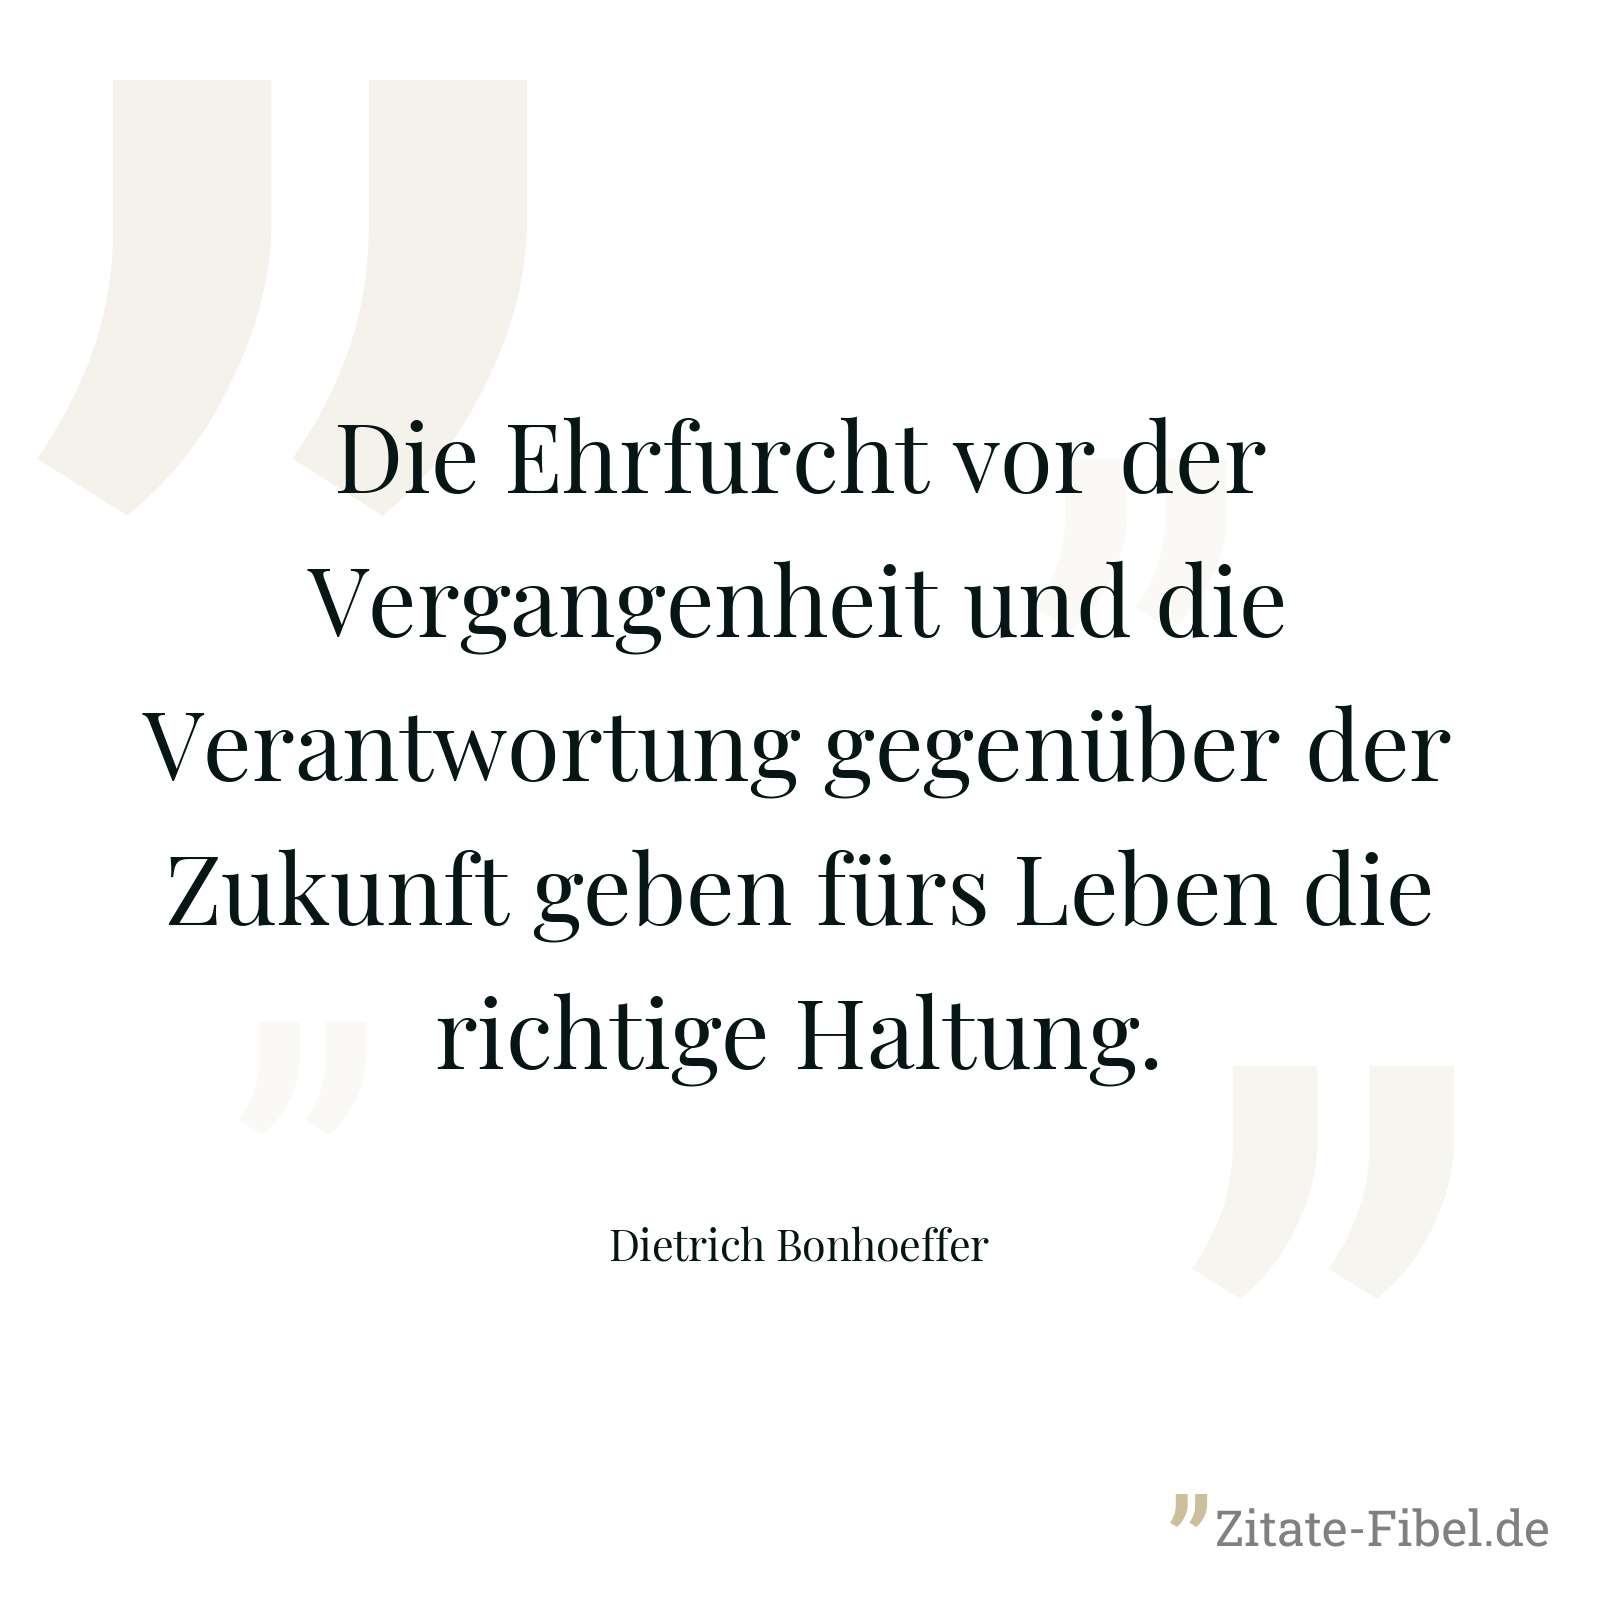 Die Ehrfurcht vor der Vergangenheit und die Verantwortung gegenüber der Zukunft geben fürs Leben die richtige Haltung. - Dietrich Bonhoeffer